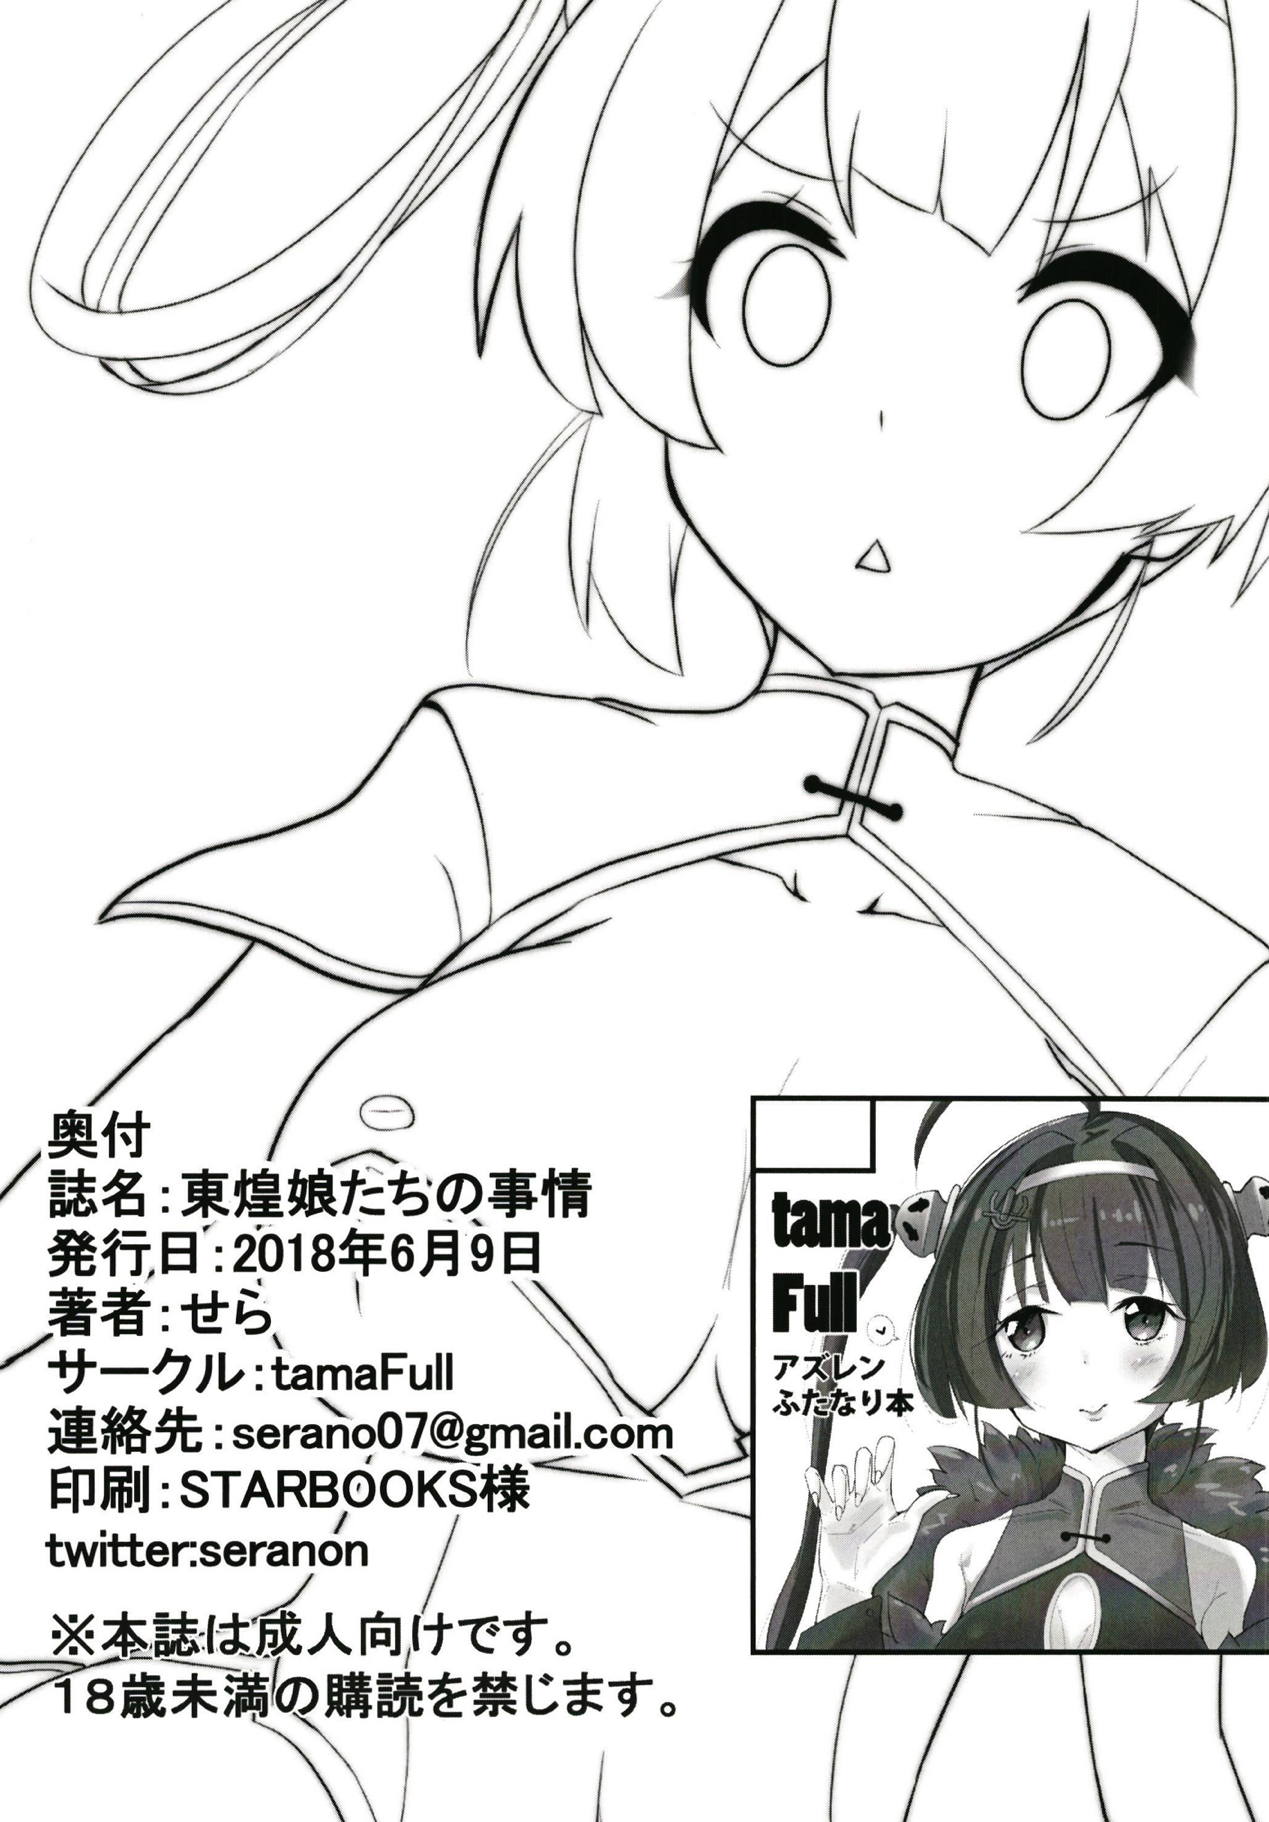 (Futaket 14) [tamaFull (Sella)] Dong Huang Musume-tachi no Jijou (Azur Lane) page 25 full